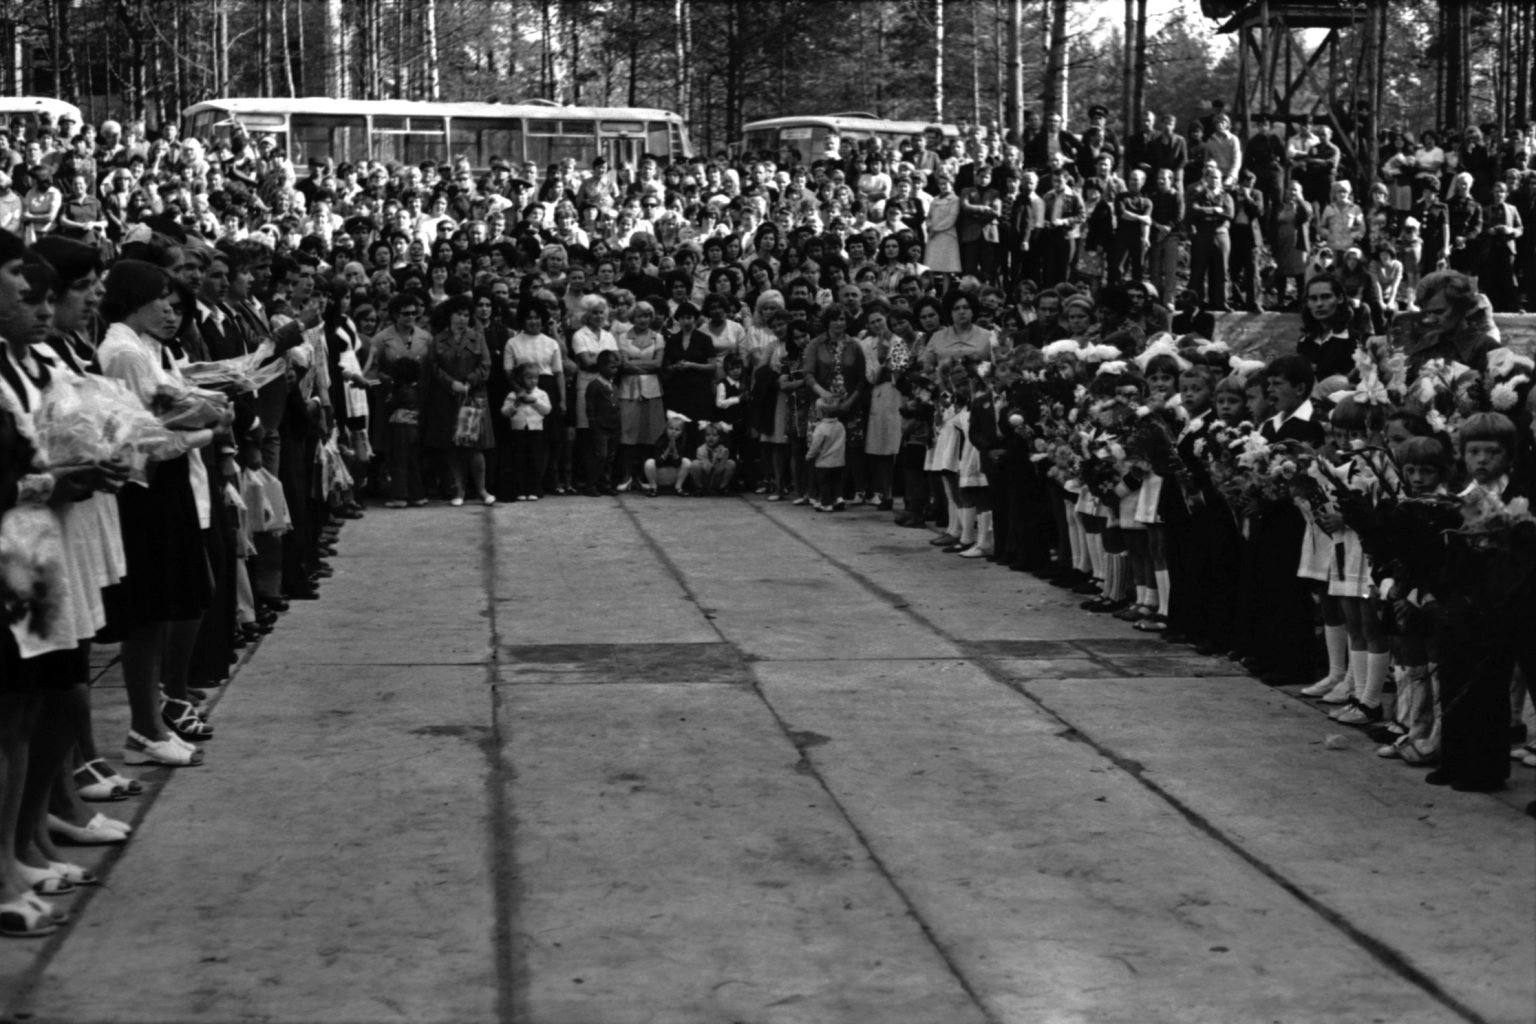 Iškilmingas pirmosios mokyklos atidarymas Sniečkaus (dabar Visaginas) kaime. 1977 m. rugsėjo 1 d. Vasilijaus Čiupačenko nuotr.